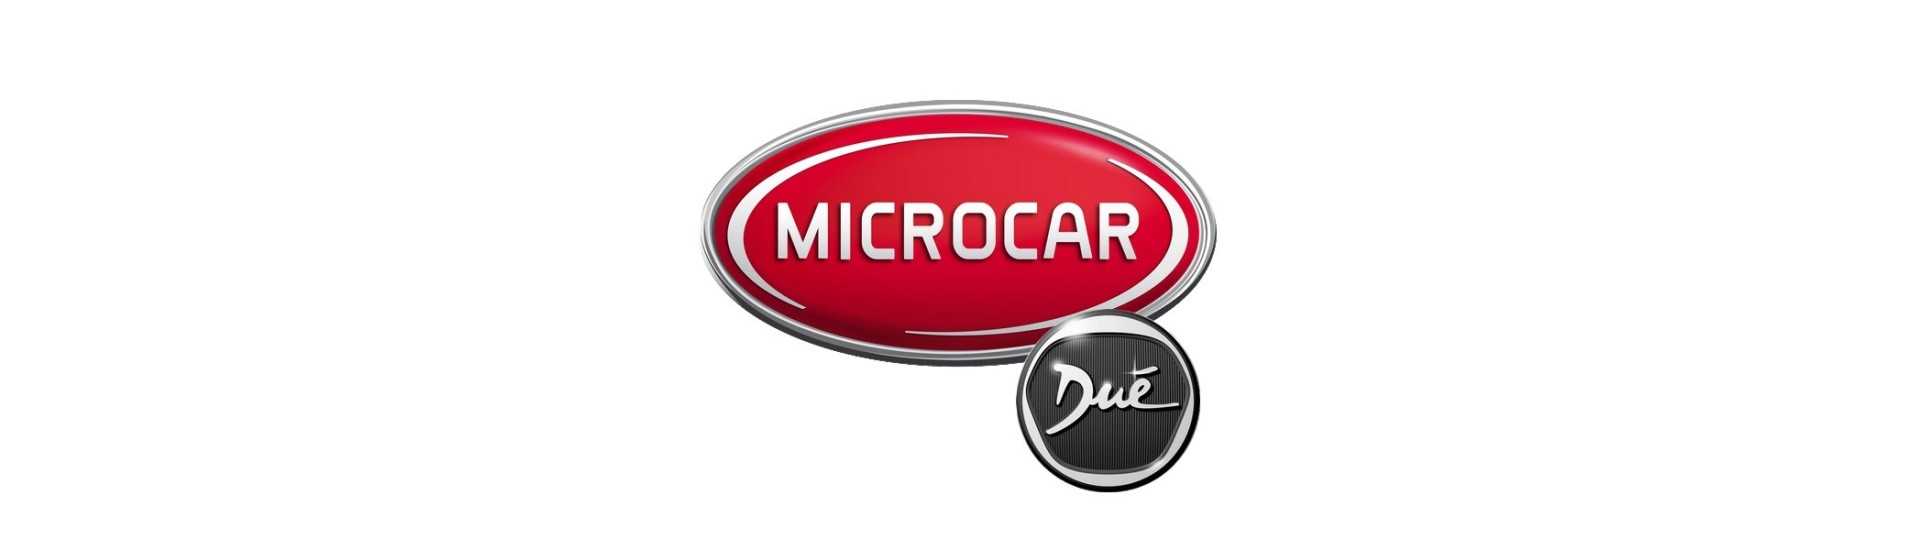 Motorvariator zum besten Preis Auto ohne Lizenz Microcar Dué